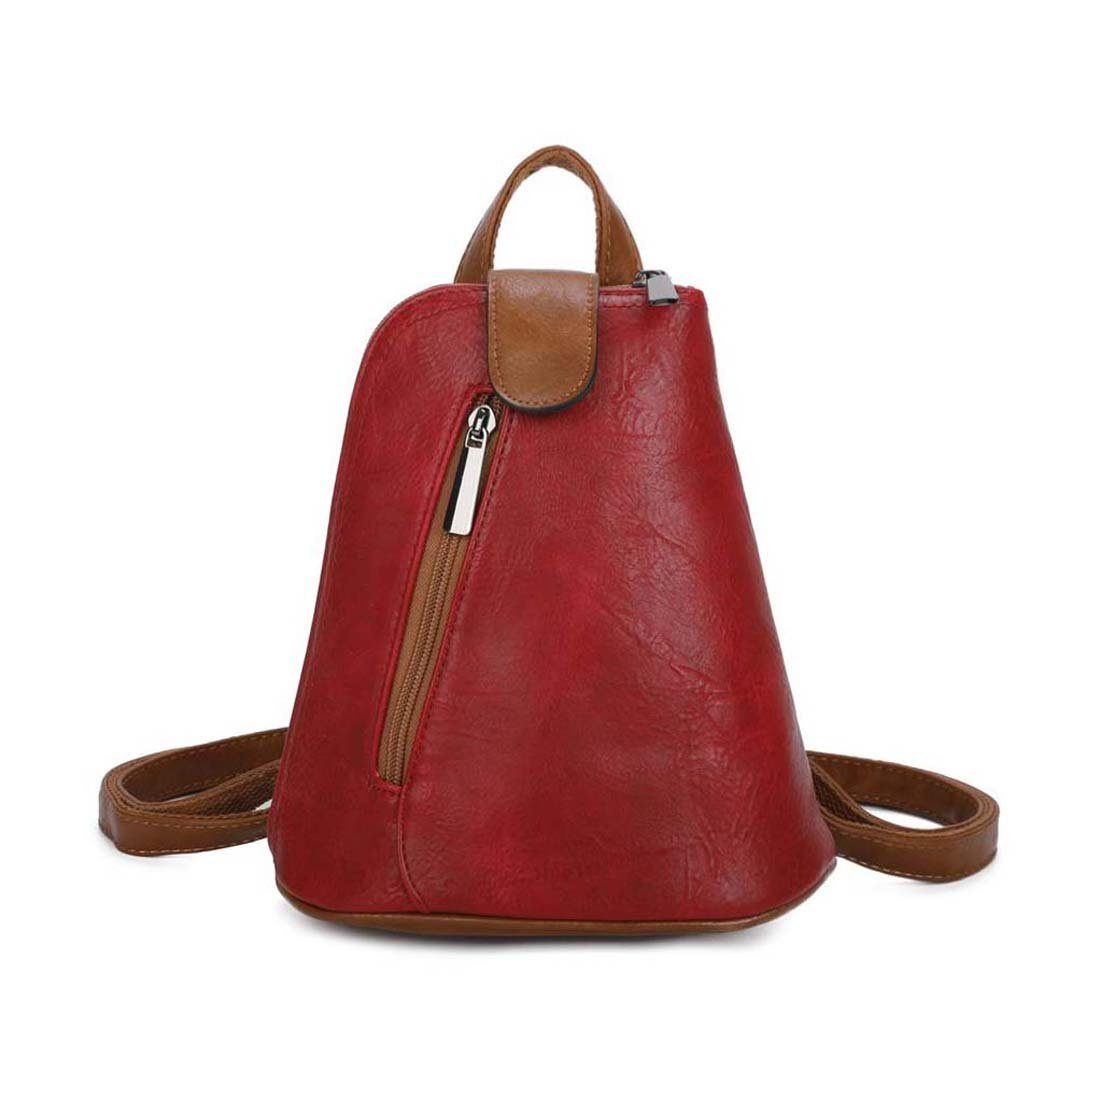 ITALYSHOP24 Rucksack Damen Tasche Schultertasche Crossover, kleiner Rucksack, Umhängetasche / Handtasche tragbar Rot